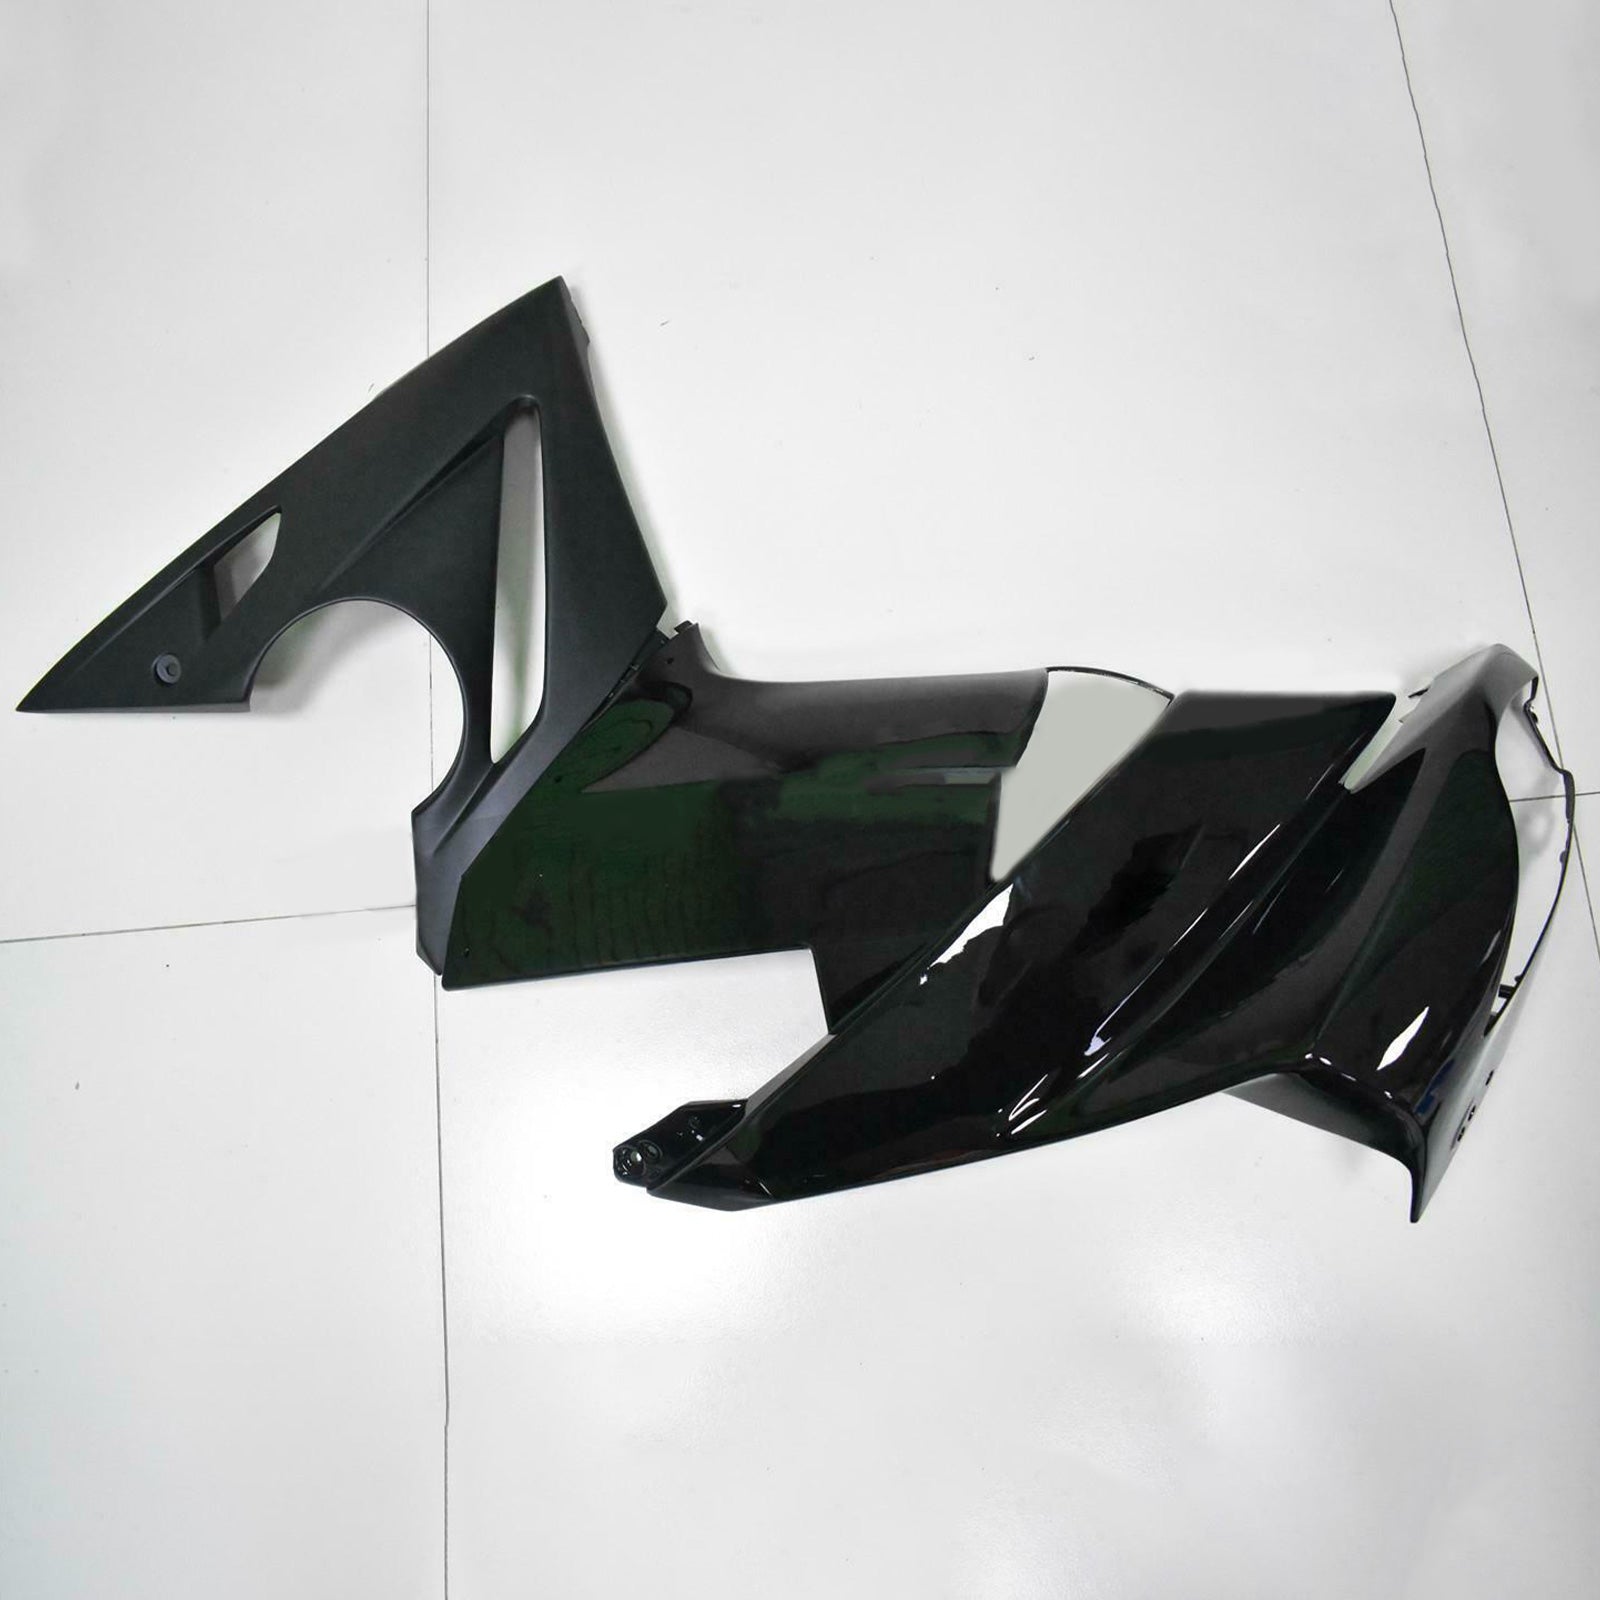 Amotopart Kit de carénage en plastique pour Kawasaki Ninja 650 ER-6F EX650 2009-2011 01 # générique